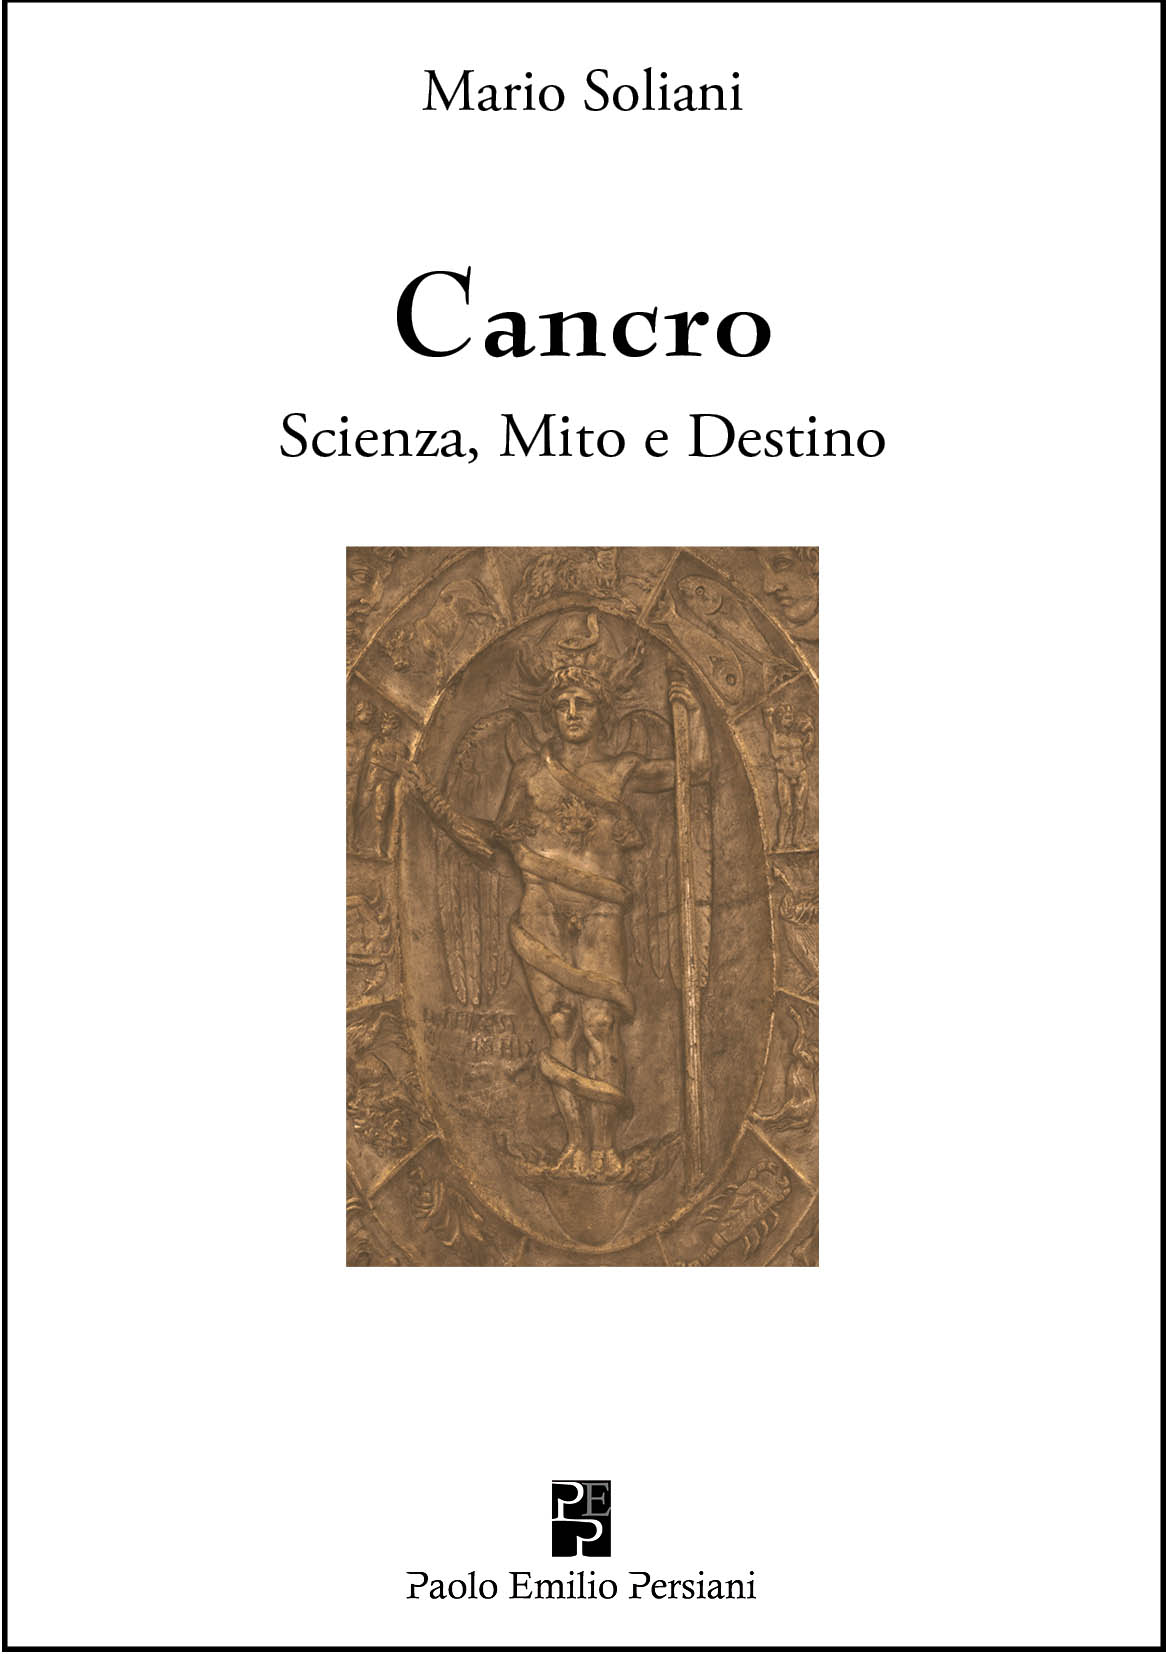 Presentazione del libro “Cancro. Scienza, Mito e Destino” di Mario Soliani